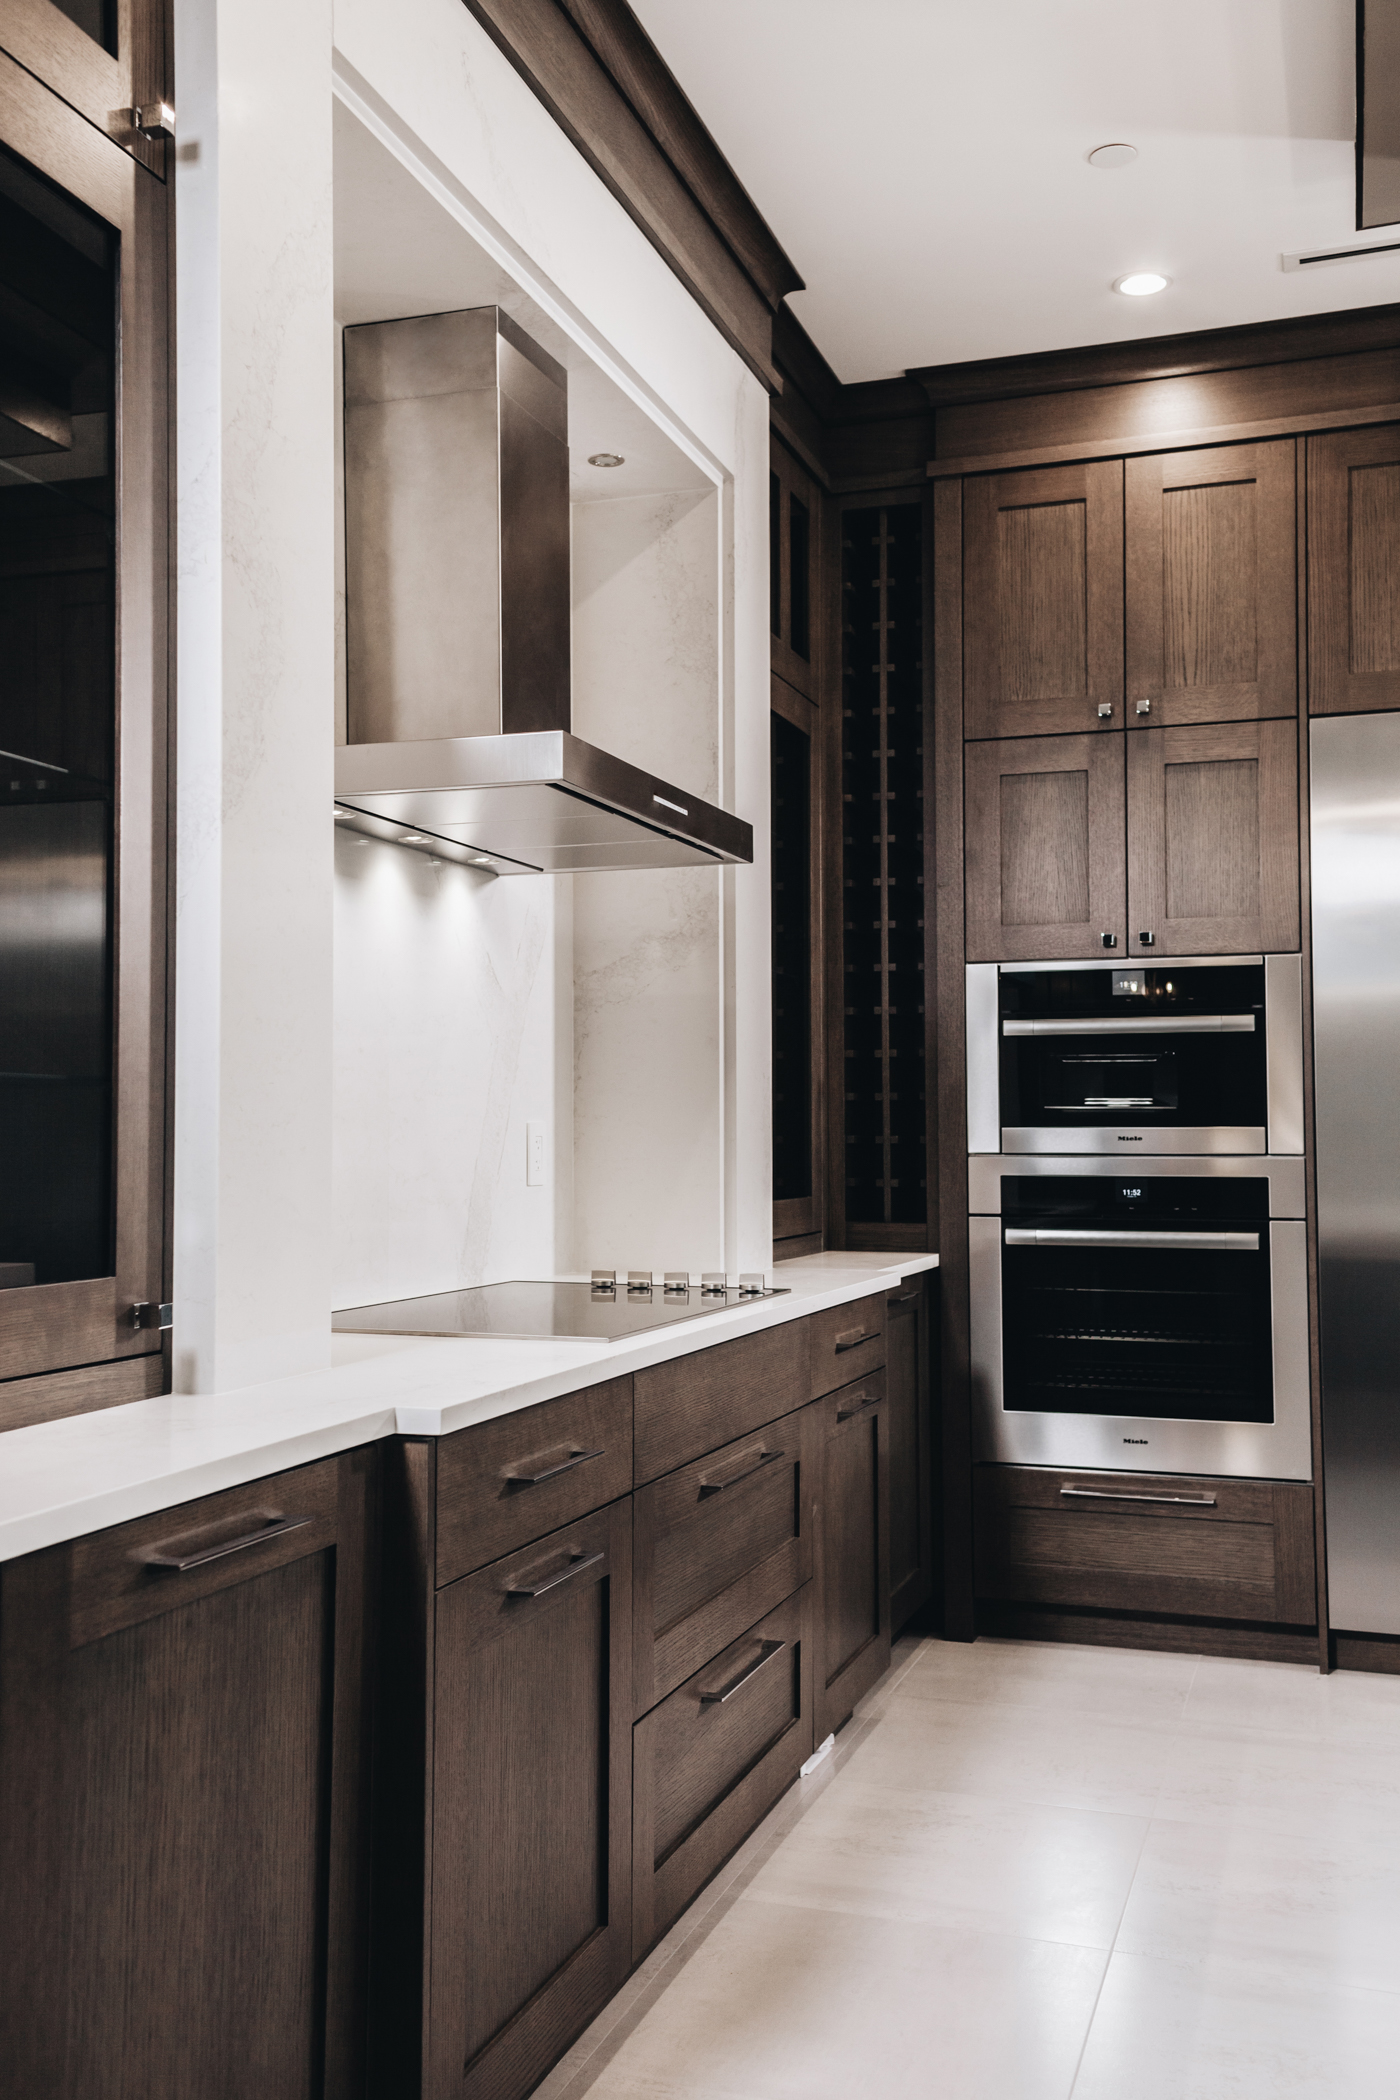 Modern Rustic Kitchen Cabinets | Kitchen Art Design